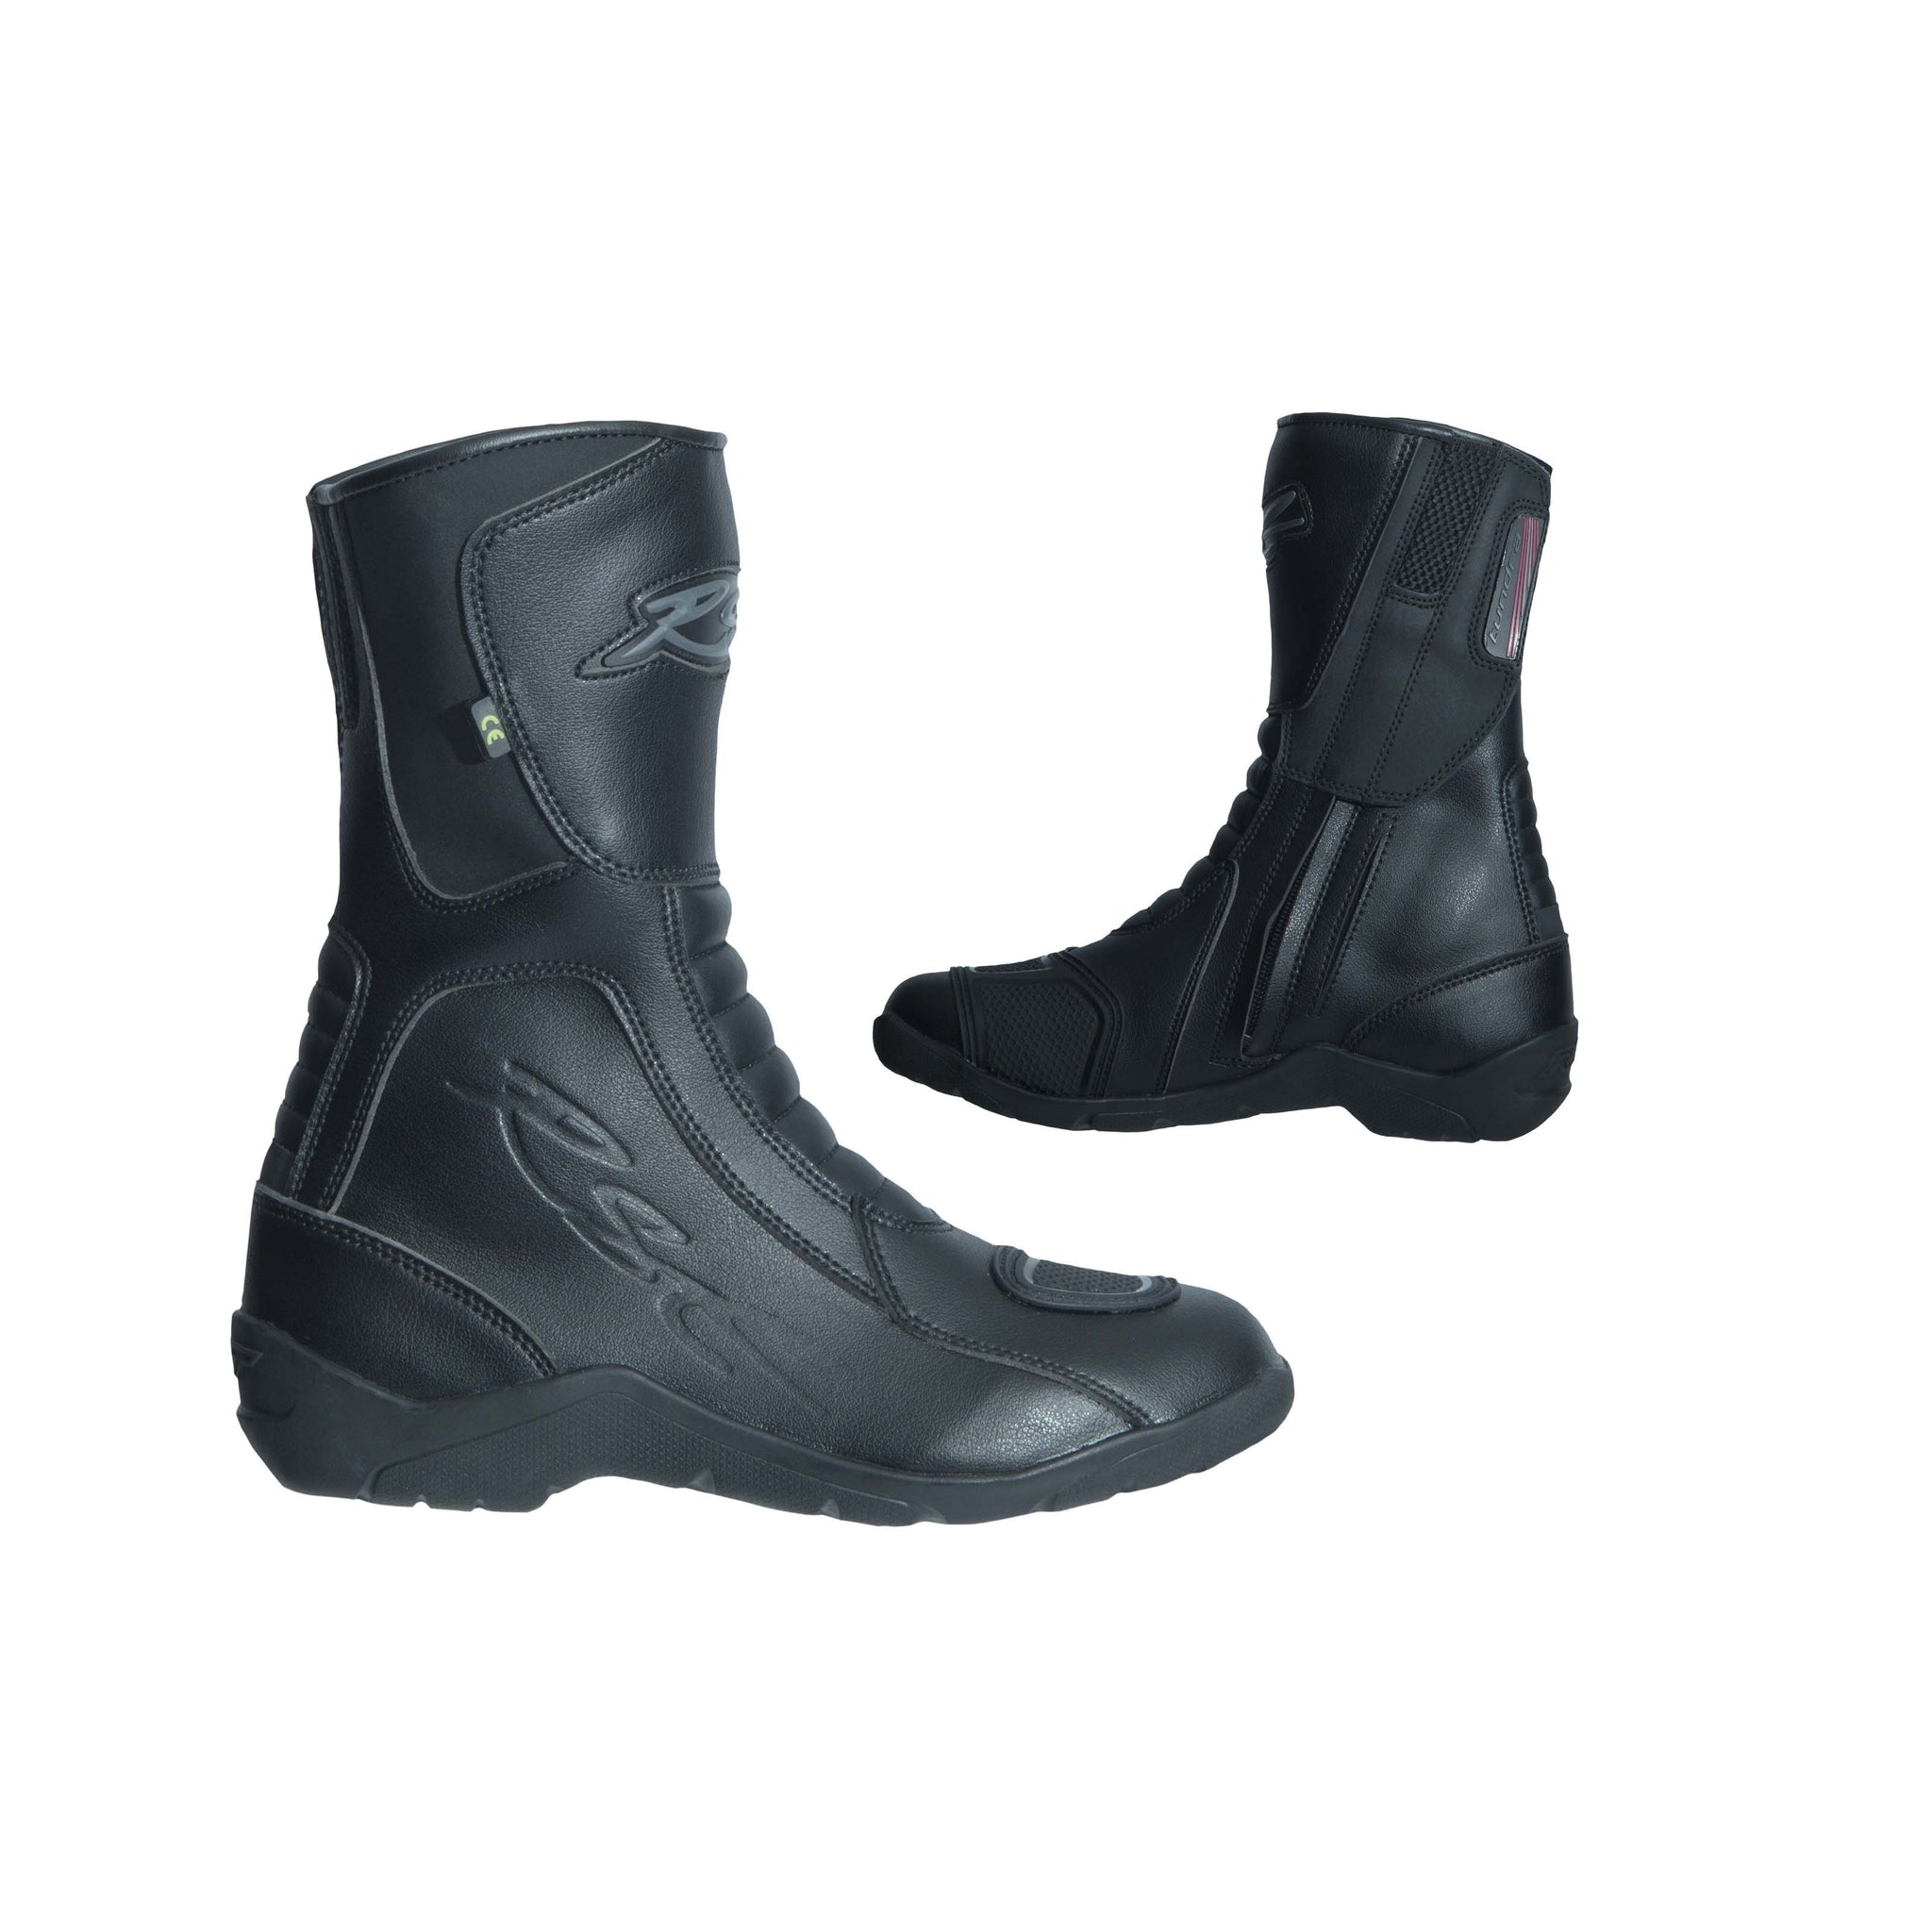 waterproof boots ladies